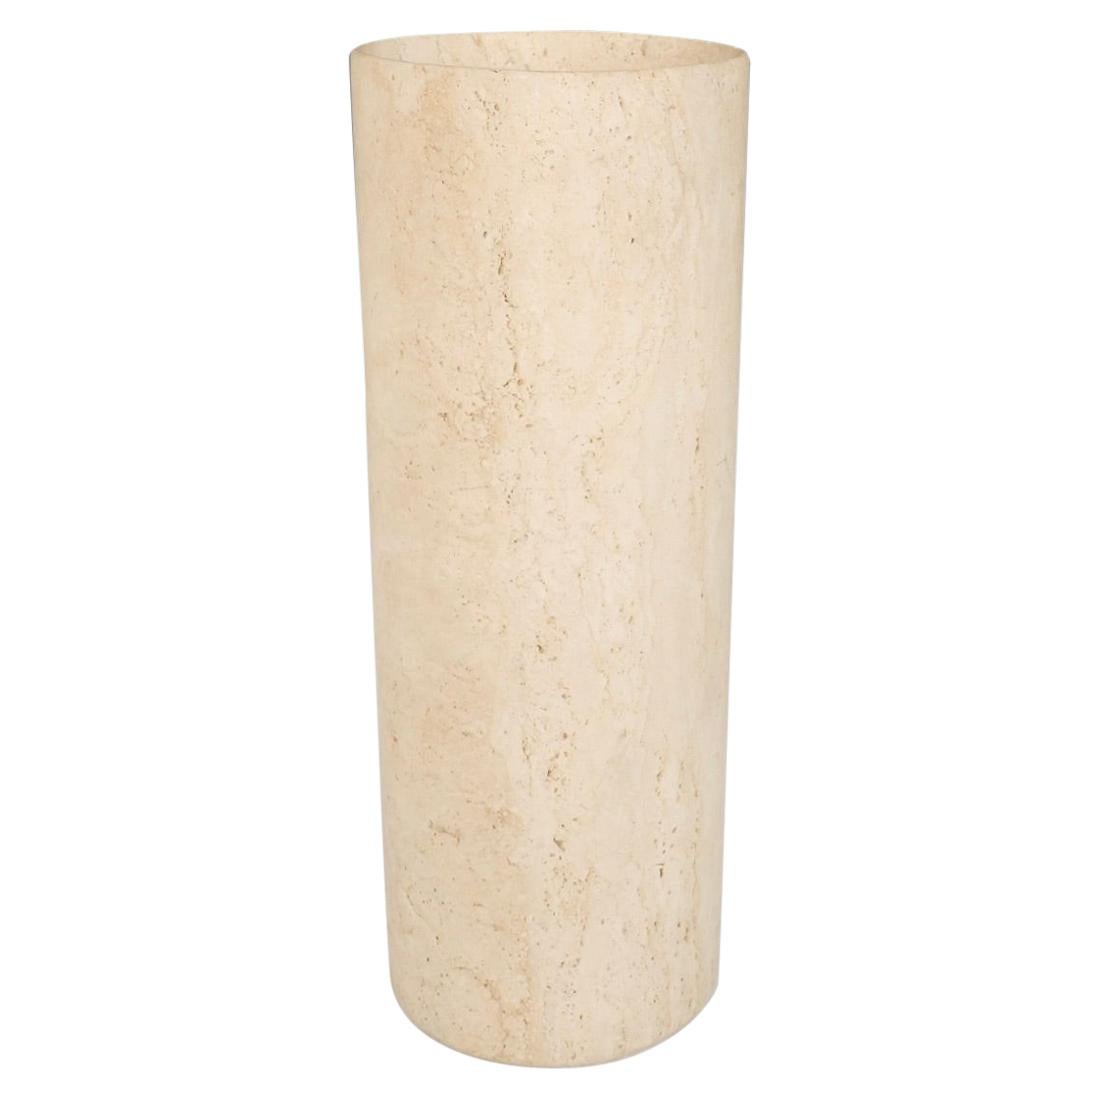 Travertine Marble Cylinder Floor Vase or Planter Pot For Sale